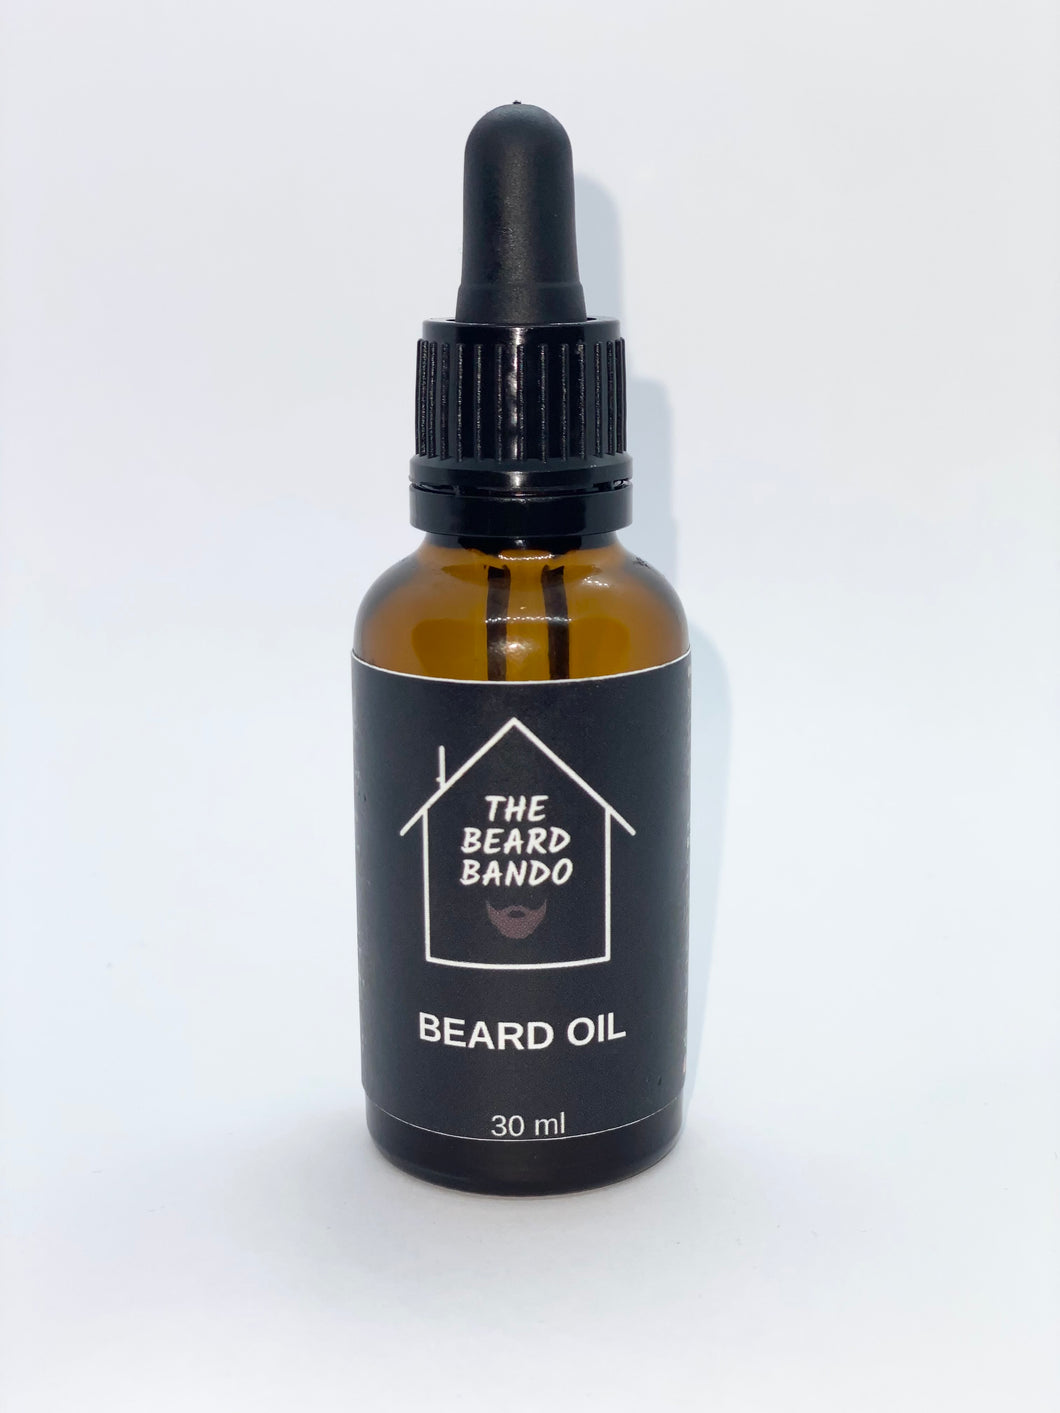 Bando Beard Oil #7 by The Beard Bando